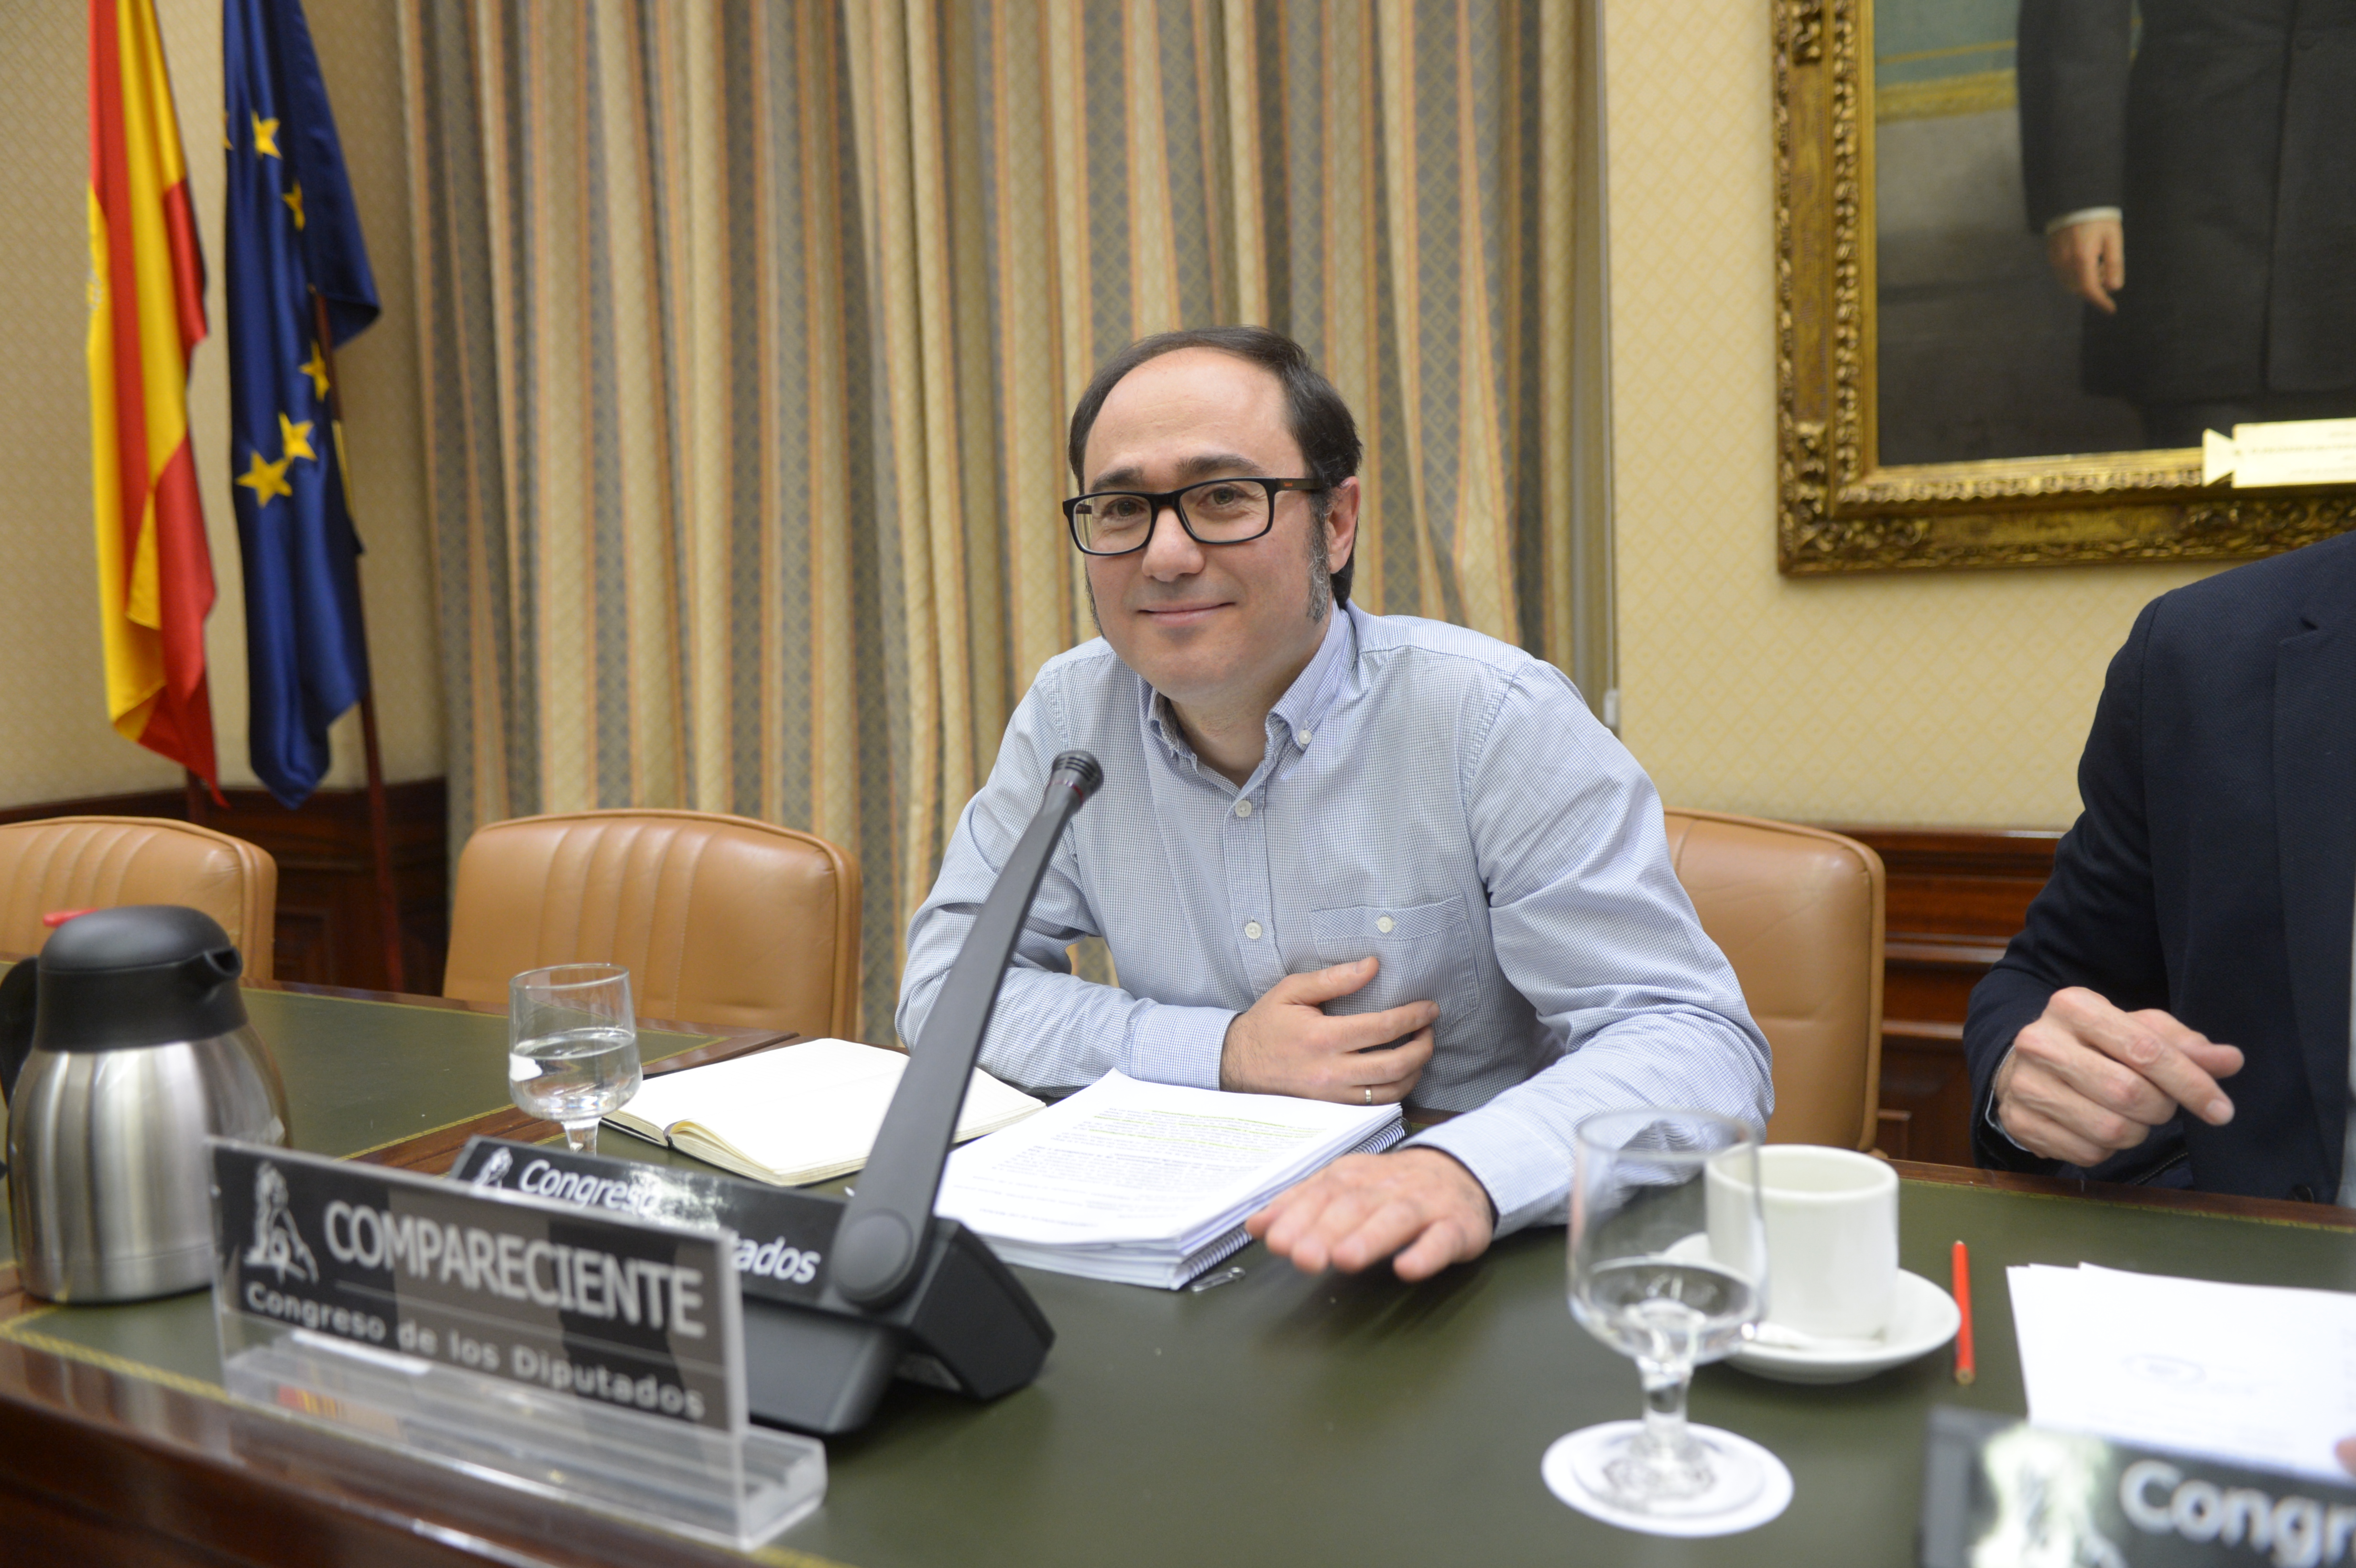 Daniel de Frutos, tesorero de Podemos, compareciendo en la Comisión de Calidad Democrática del Congreso en 2017.